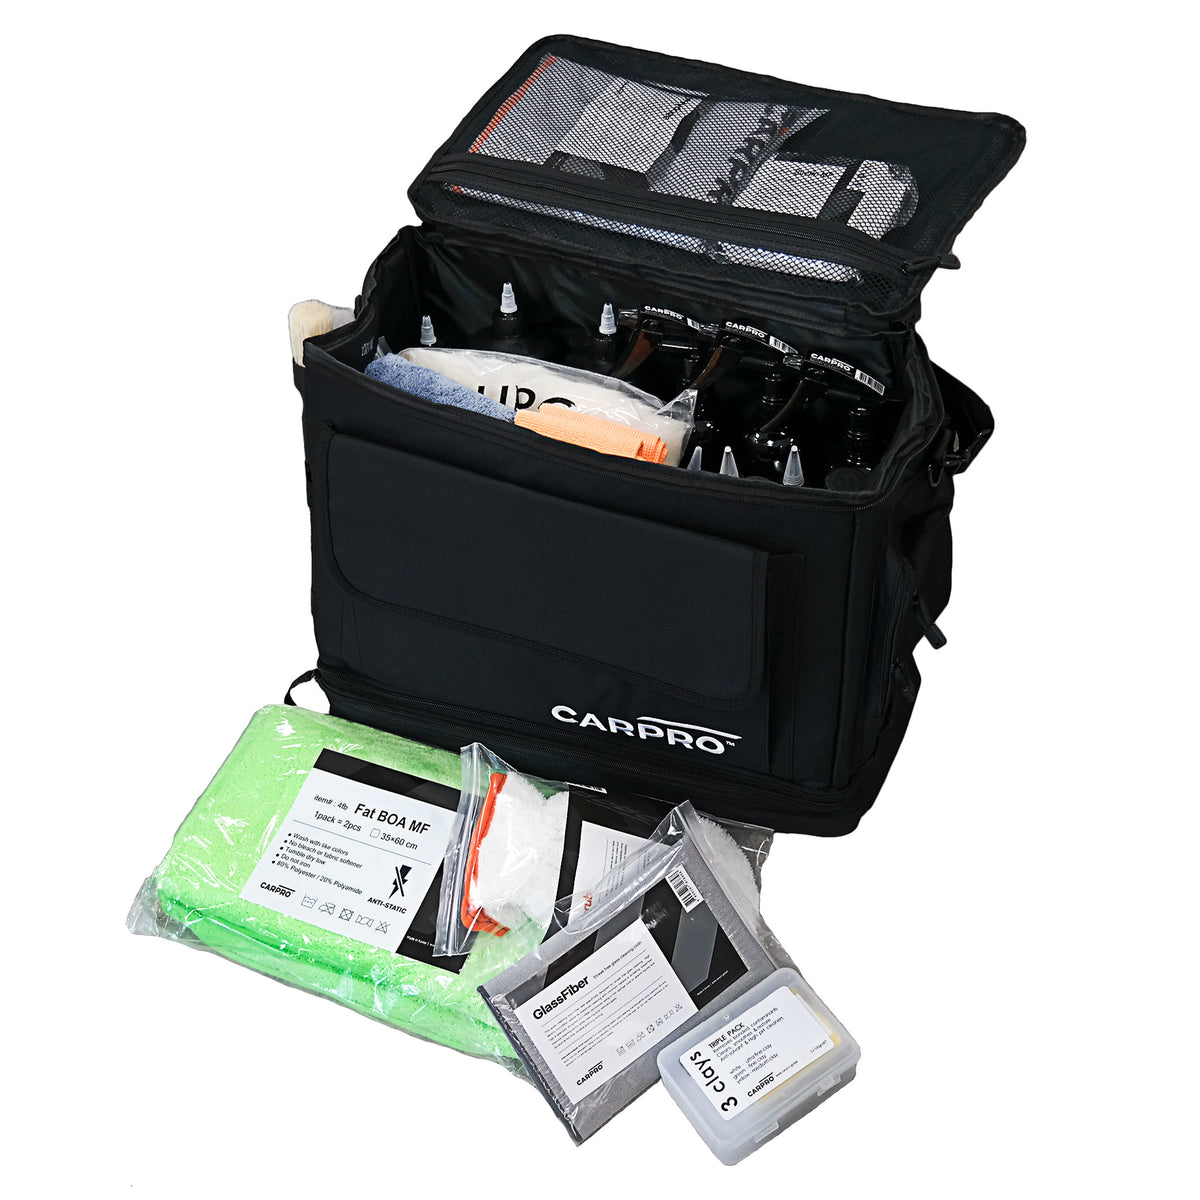 Kit completo per la cura dell'auto CARPRO con borsa, panni in microfibra, pennelli e prodotti per la pulizia.